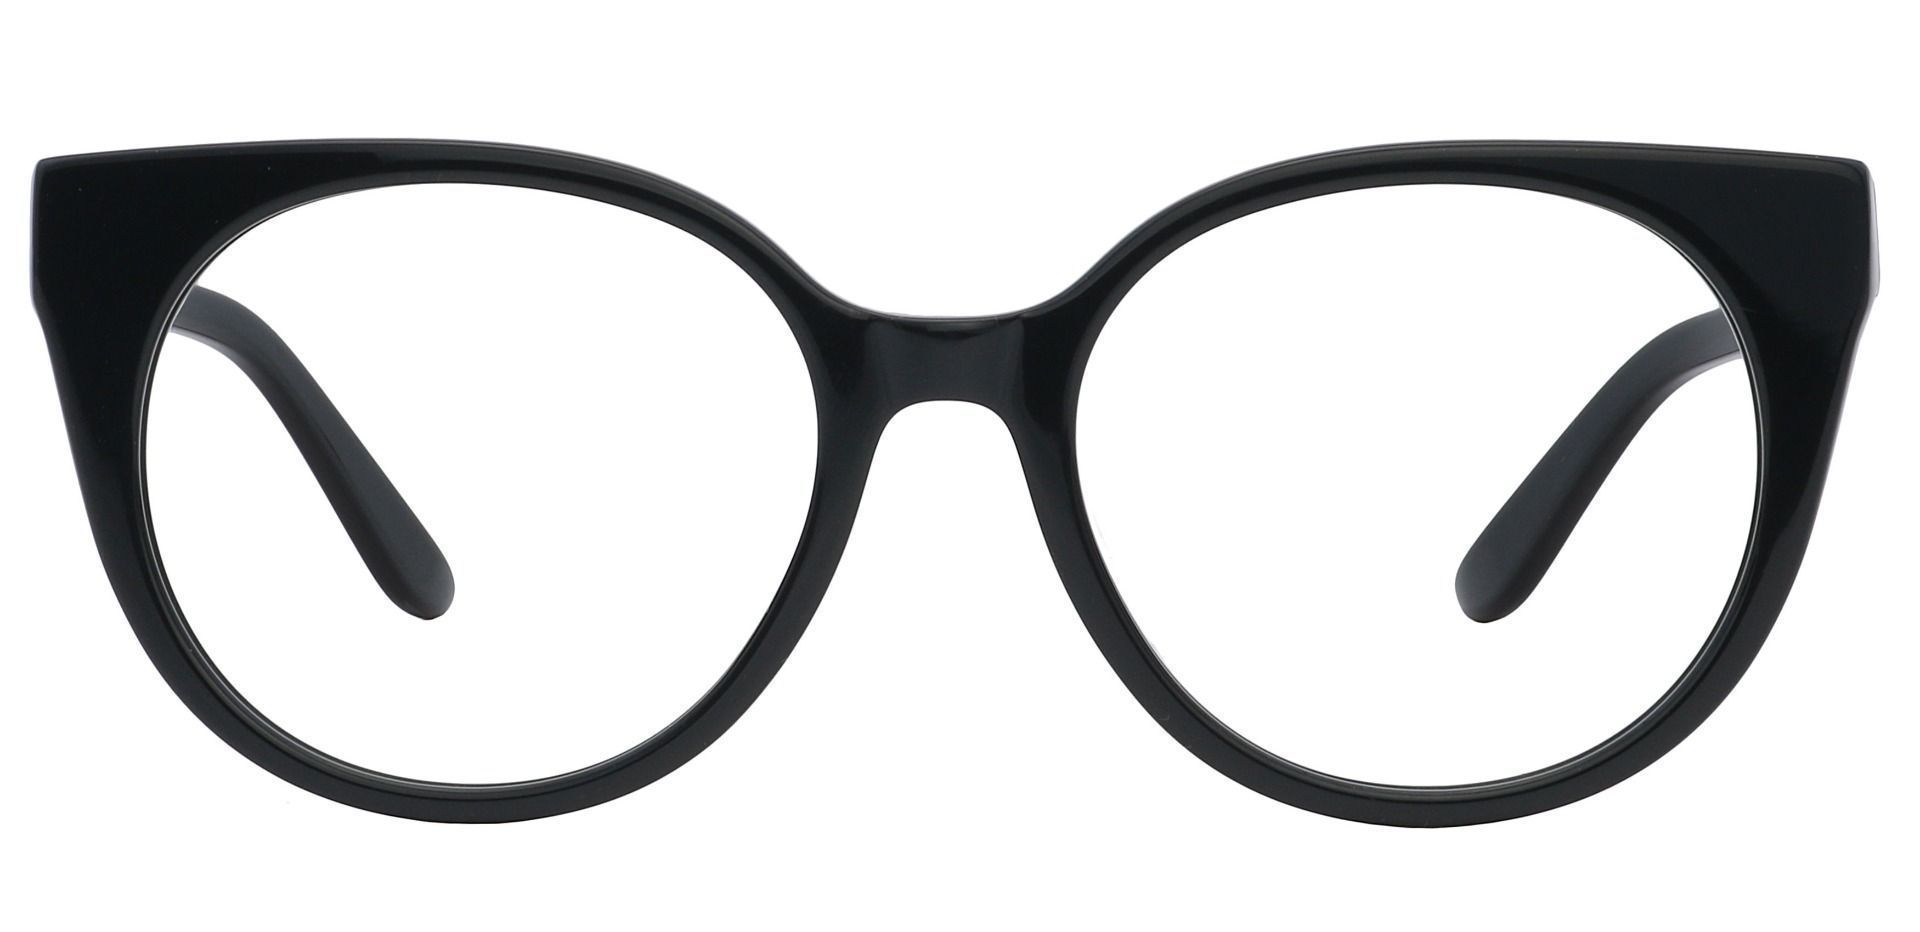 Balmoral Cat-Eye Progressive Glasses - Black